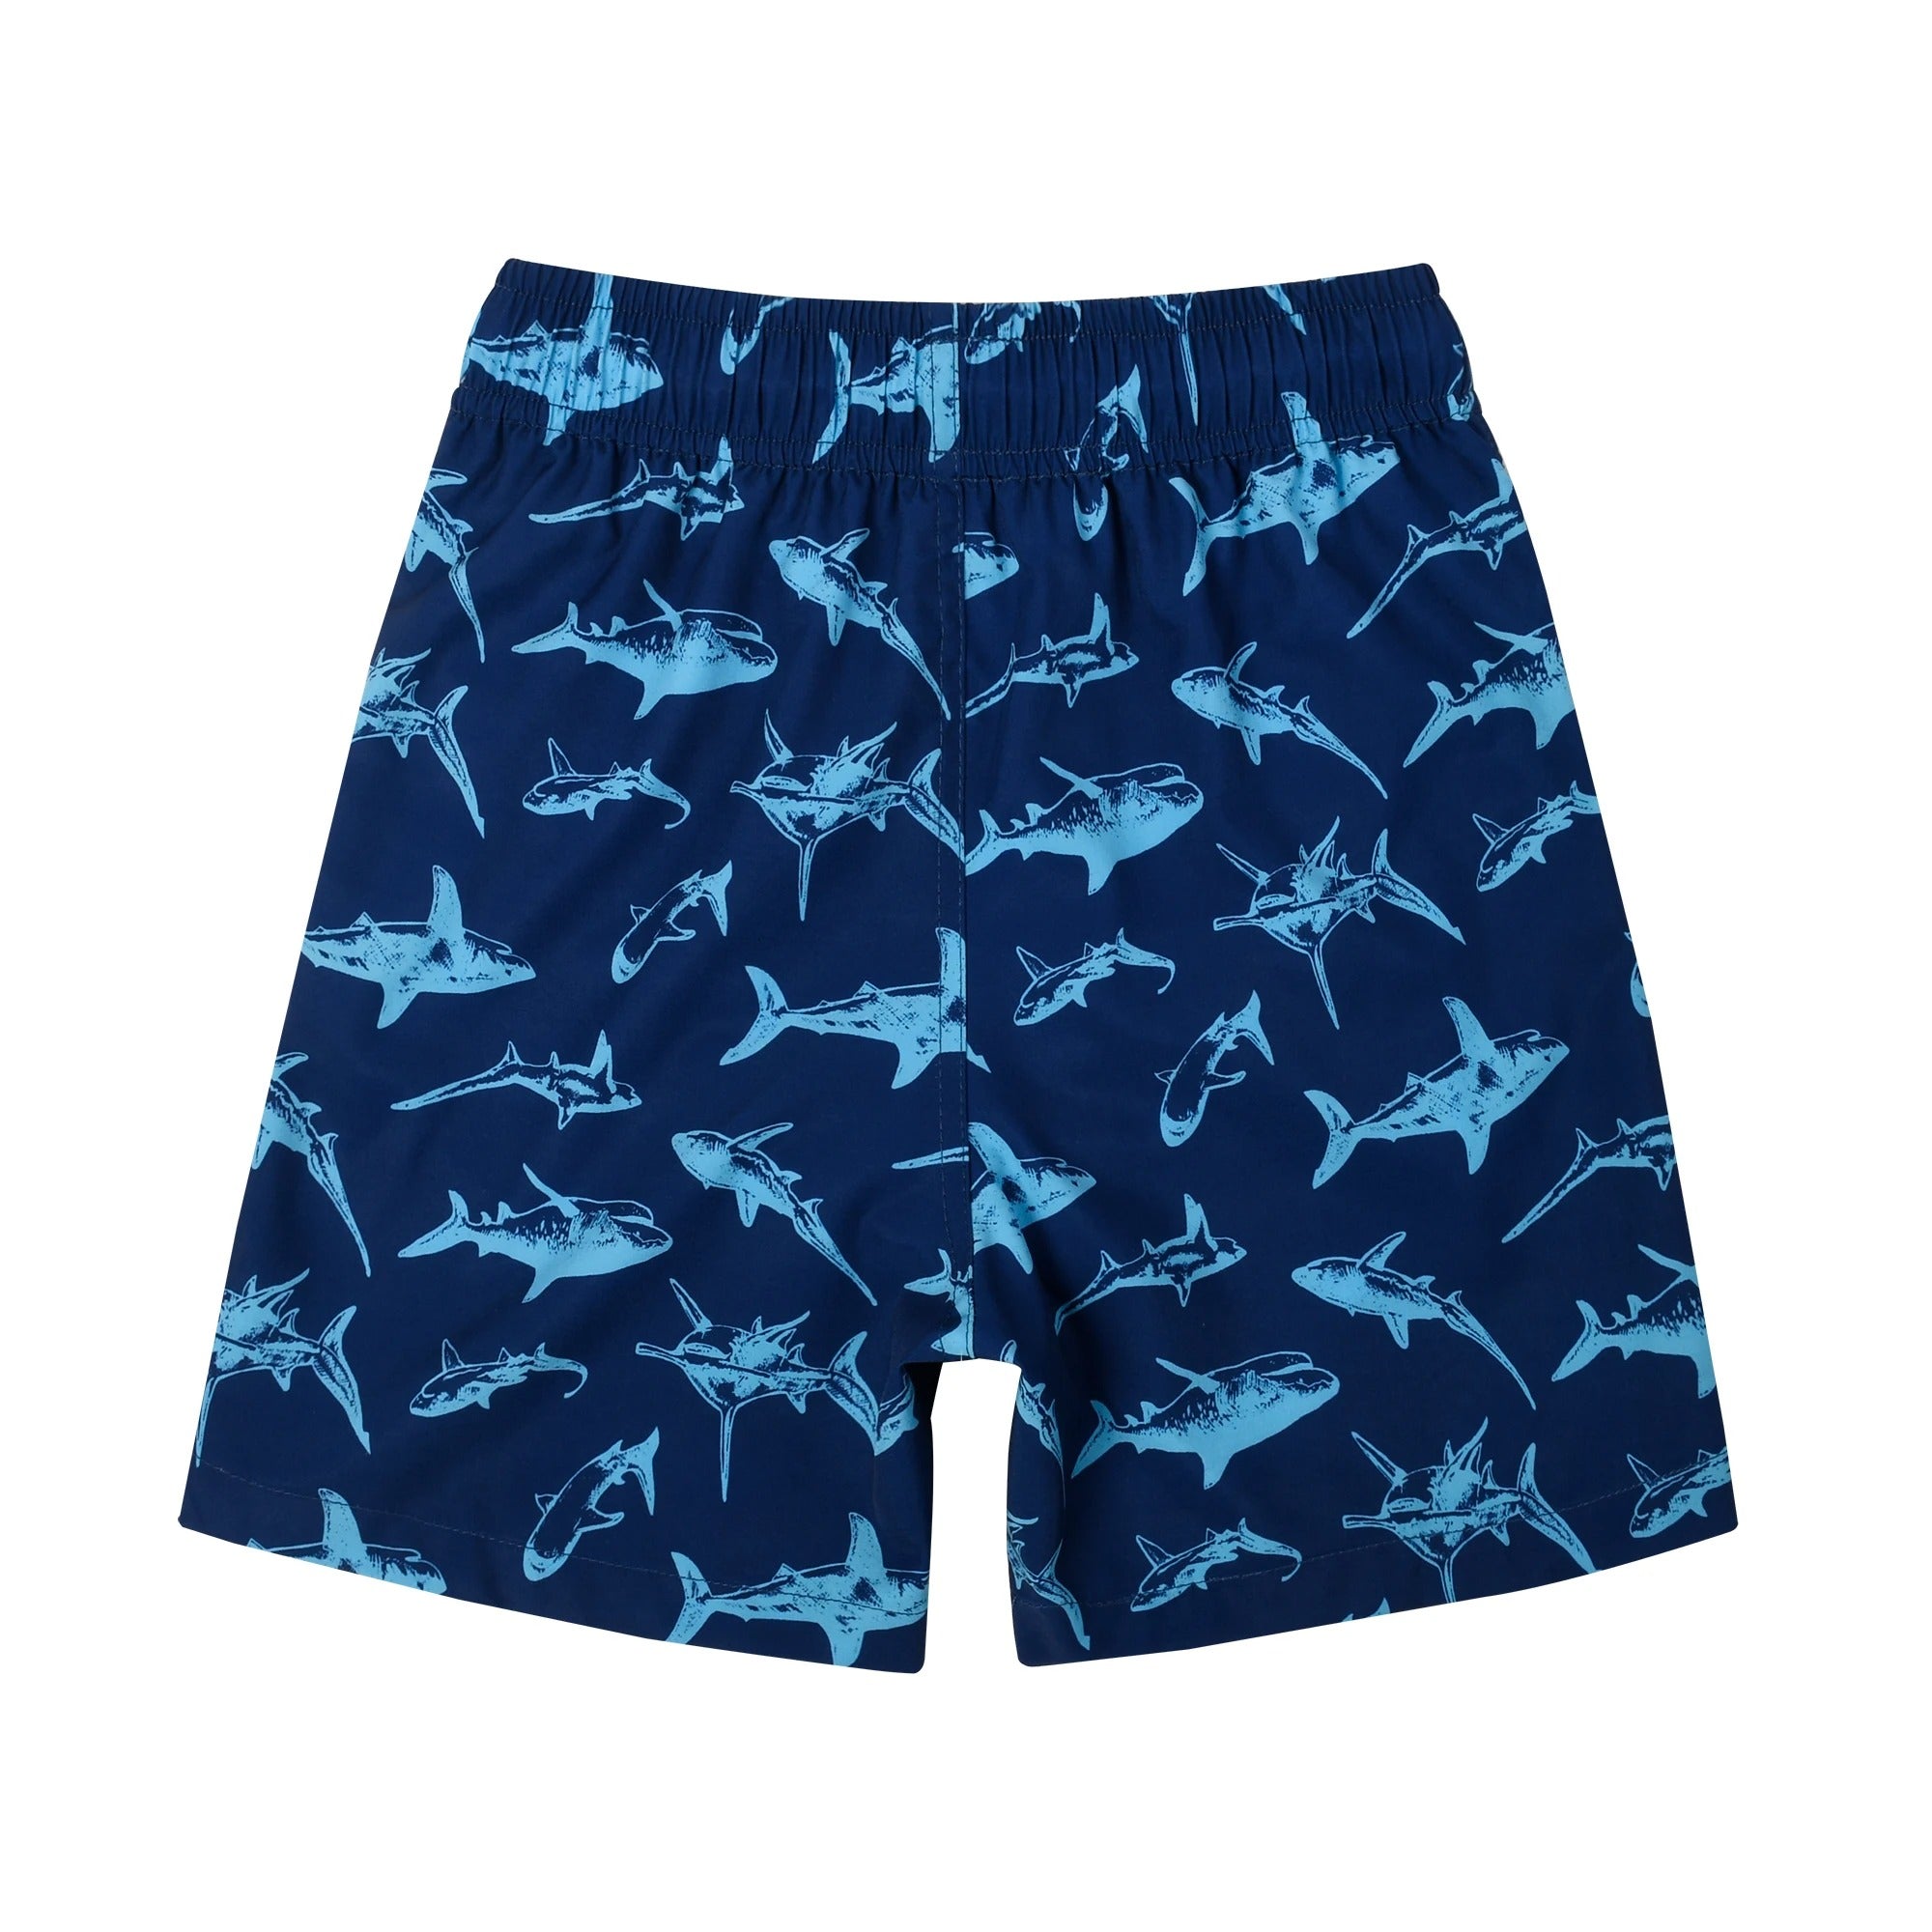 David® Blauwe elastische heren zwembroek met dierenprint